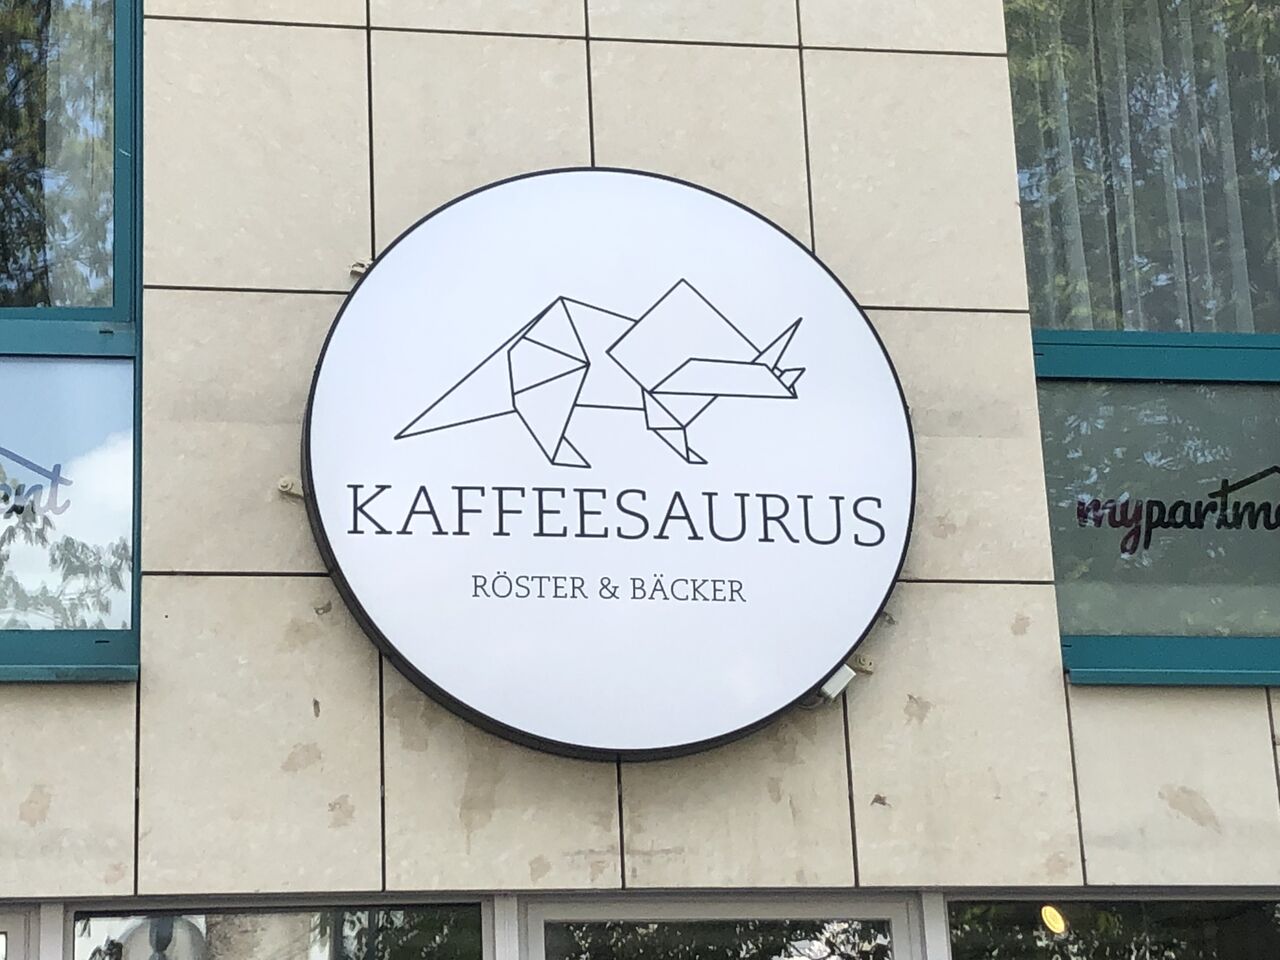 A photo of Kaffeesaurus